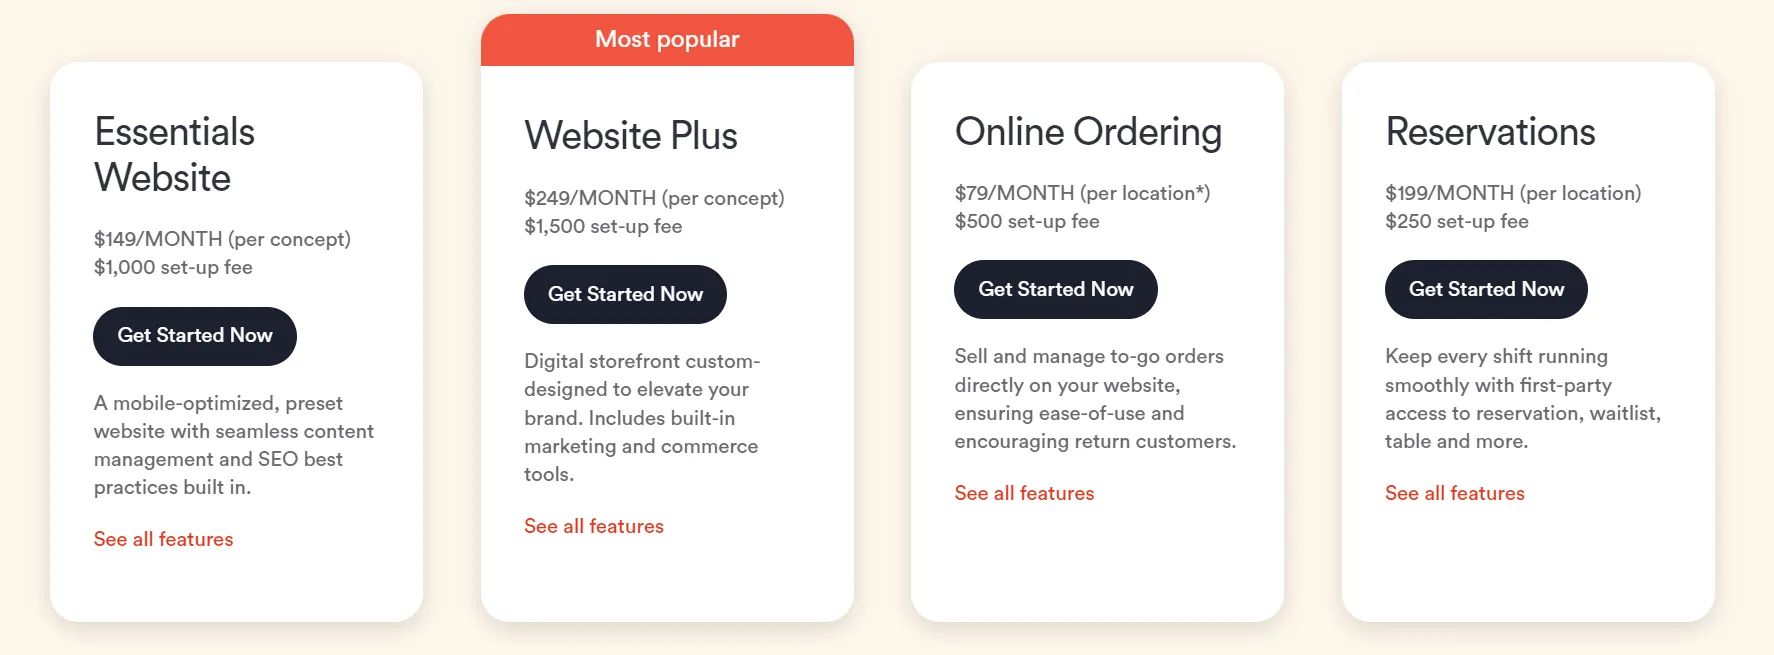 best website builders for restaurants BentoBox pricing